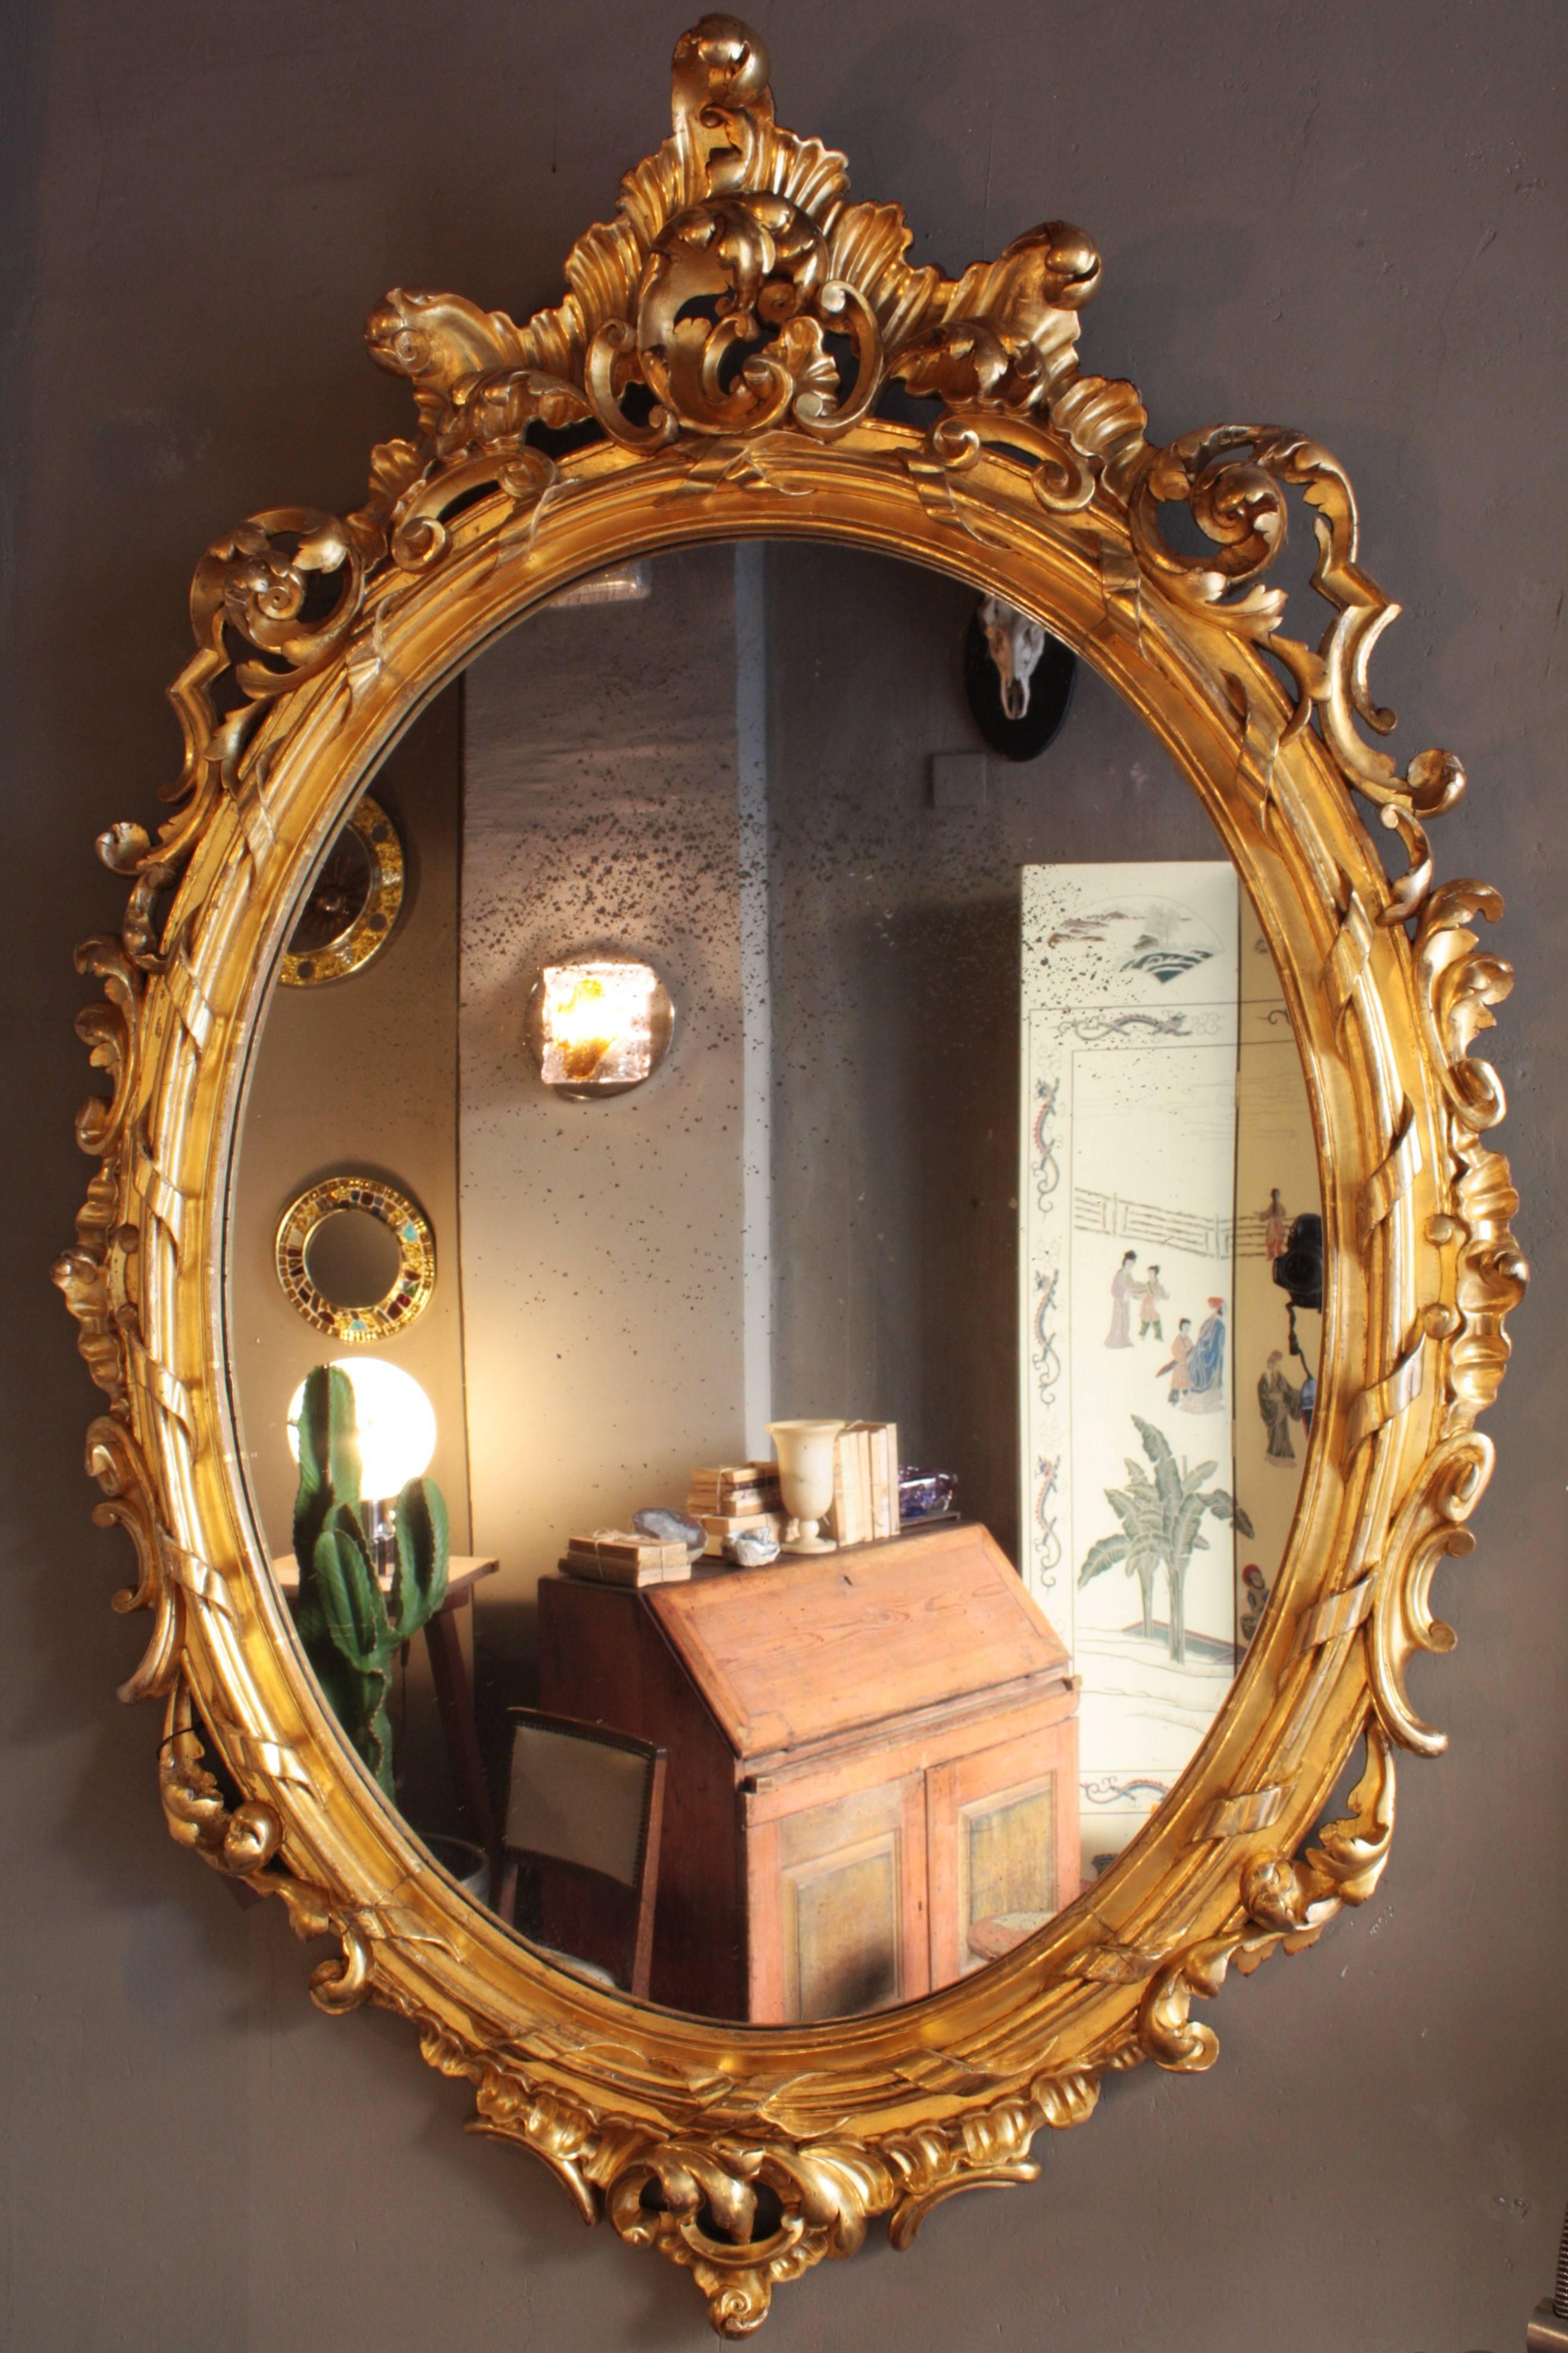 Hervorragender, fein geschnitzter, palastartiger Rokoko-Spiegel mit Blattgold-Finish in einem sehr großen Format. Frankreich, 1850.
Ein hervorragendes Beispiel für einen vergoldeten Rahmen im Rokoko-Stil.
Der Rahmen hat eine schöne geschnitzte